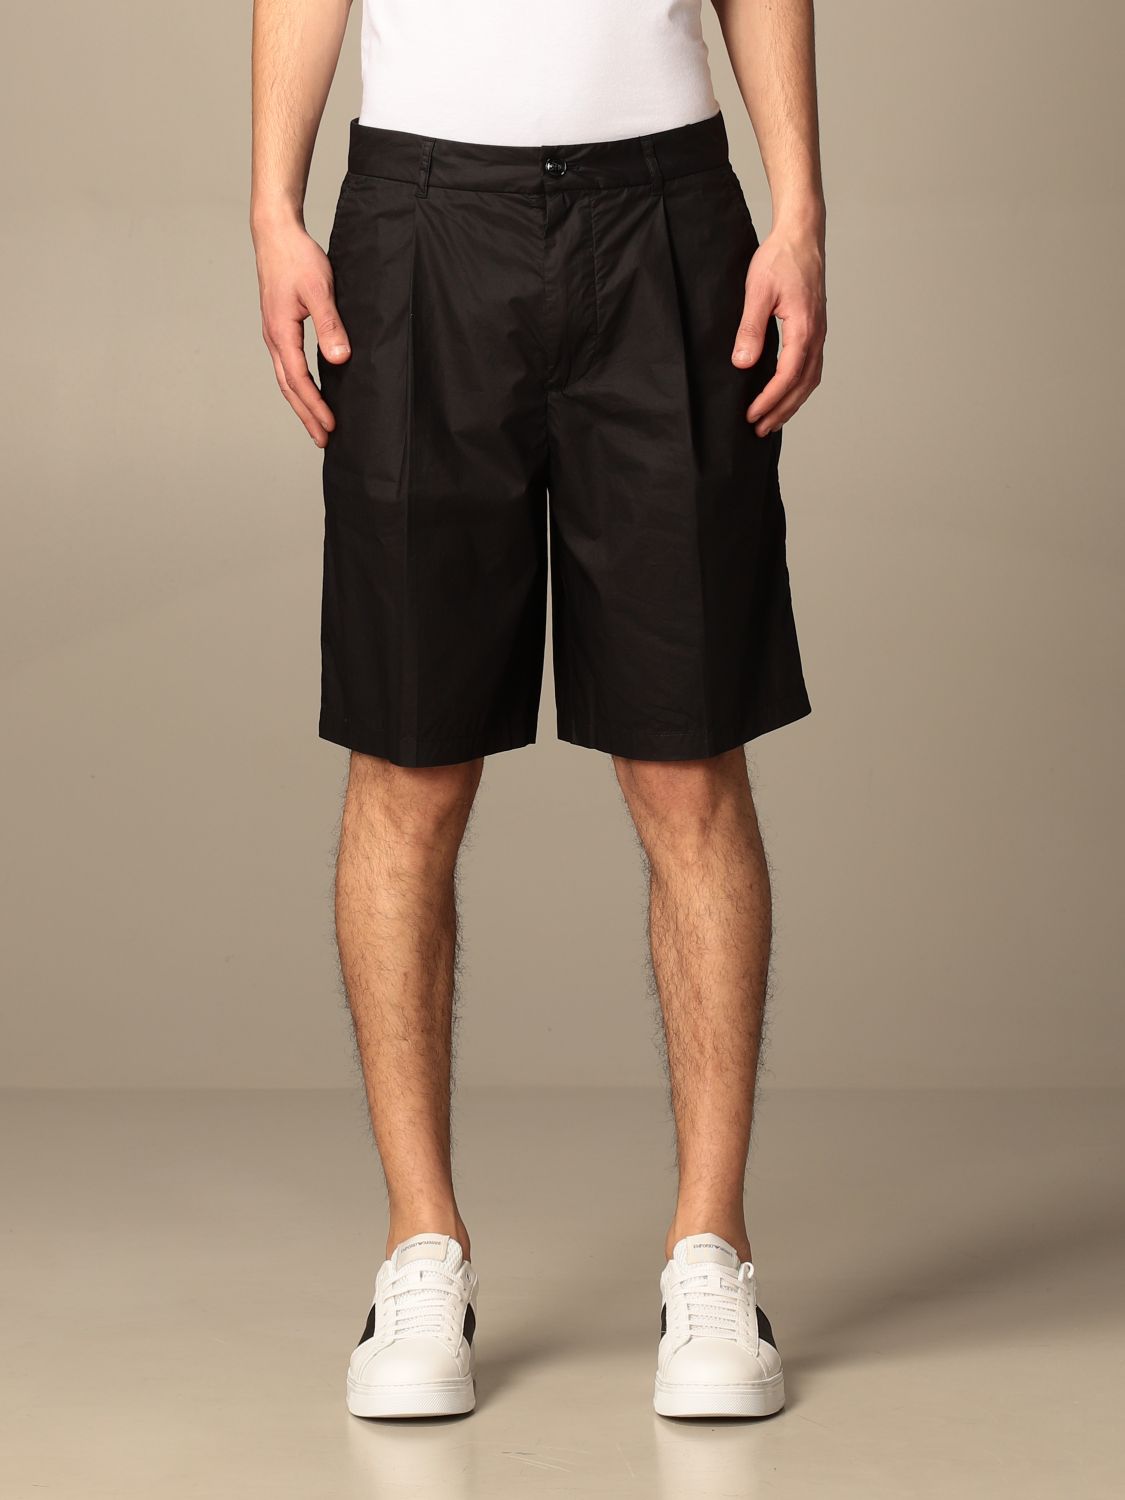 EMPORIO ARMANI: Pantalones cortos hombre, Negro | Pantalones Emporio Armani 3K1PAG 1NWWZ en línea en